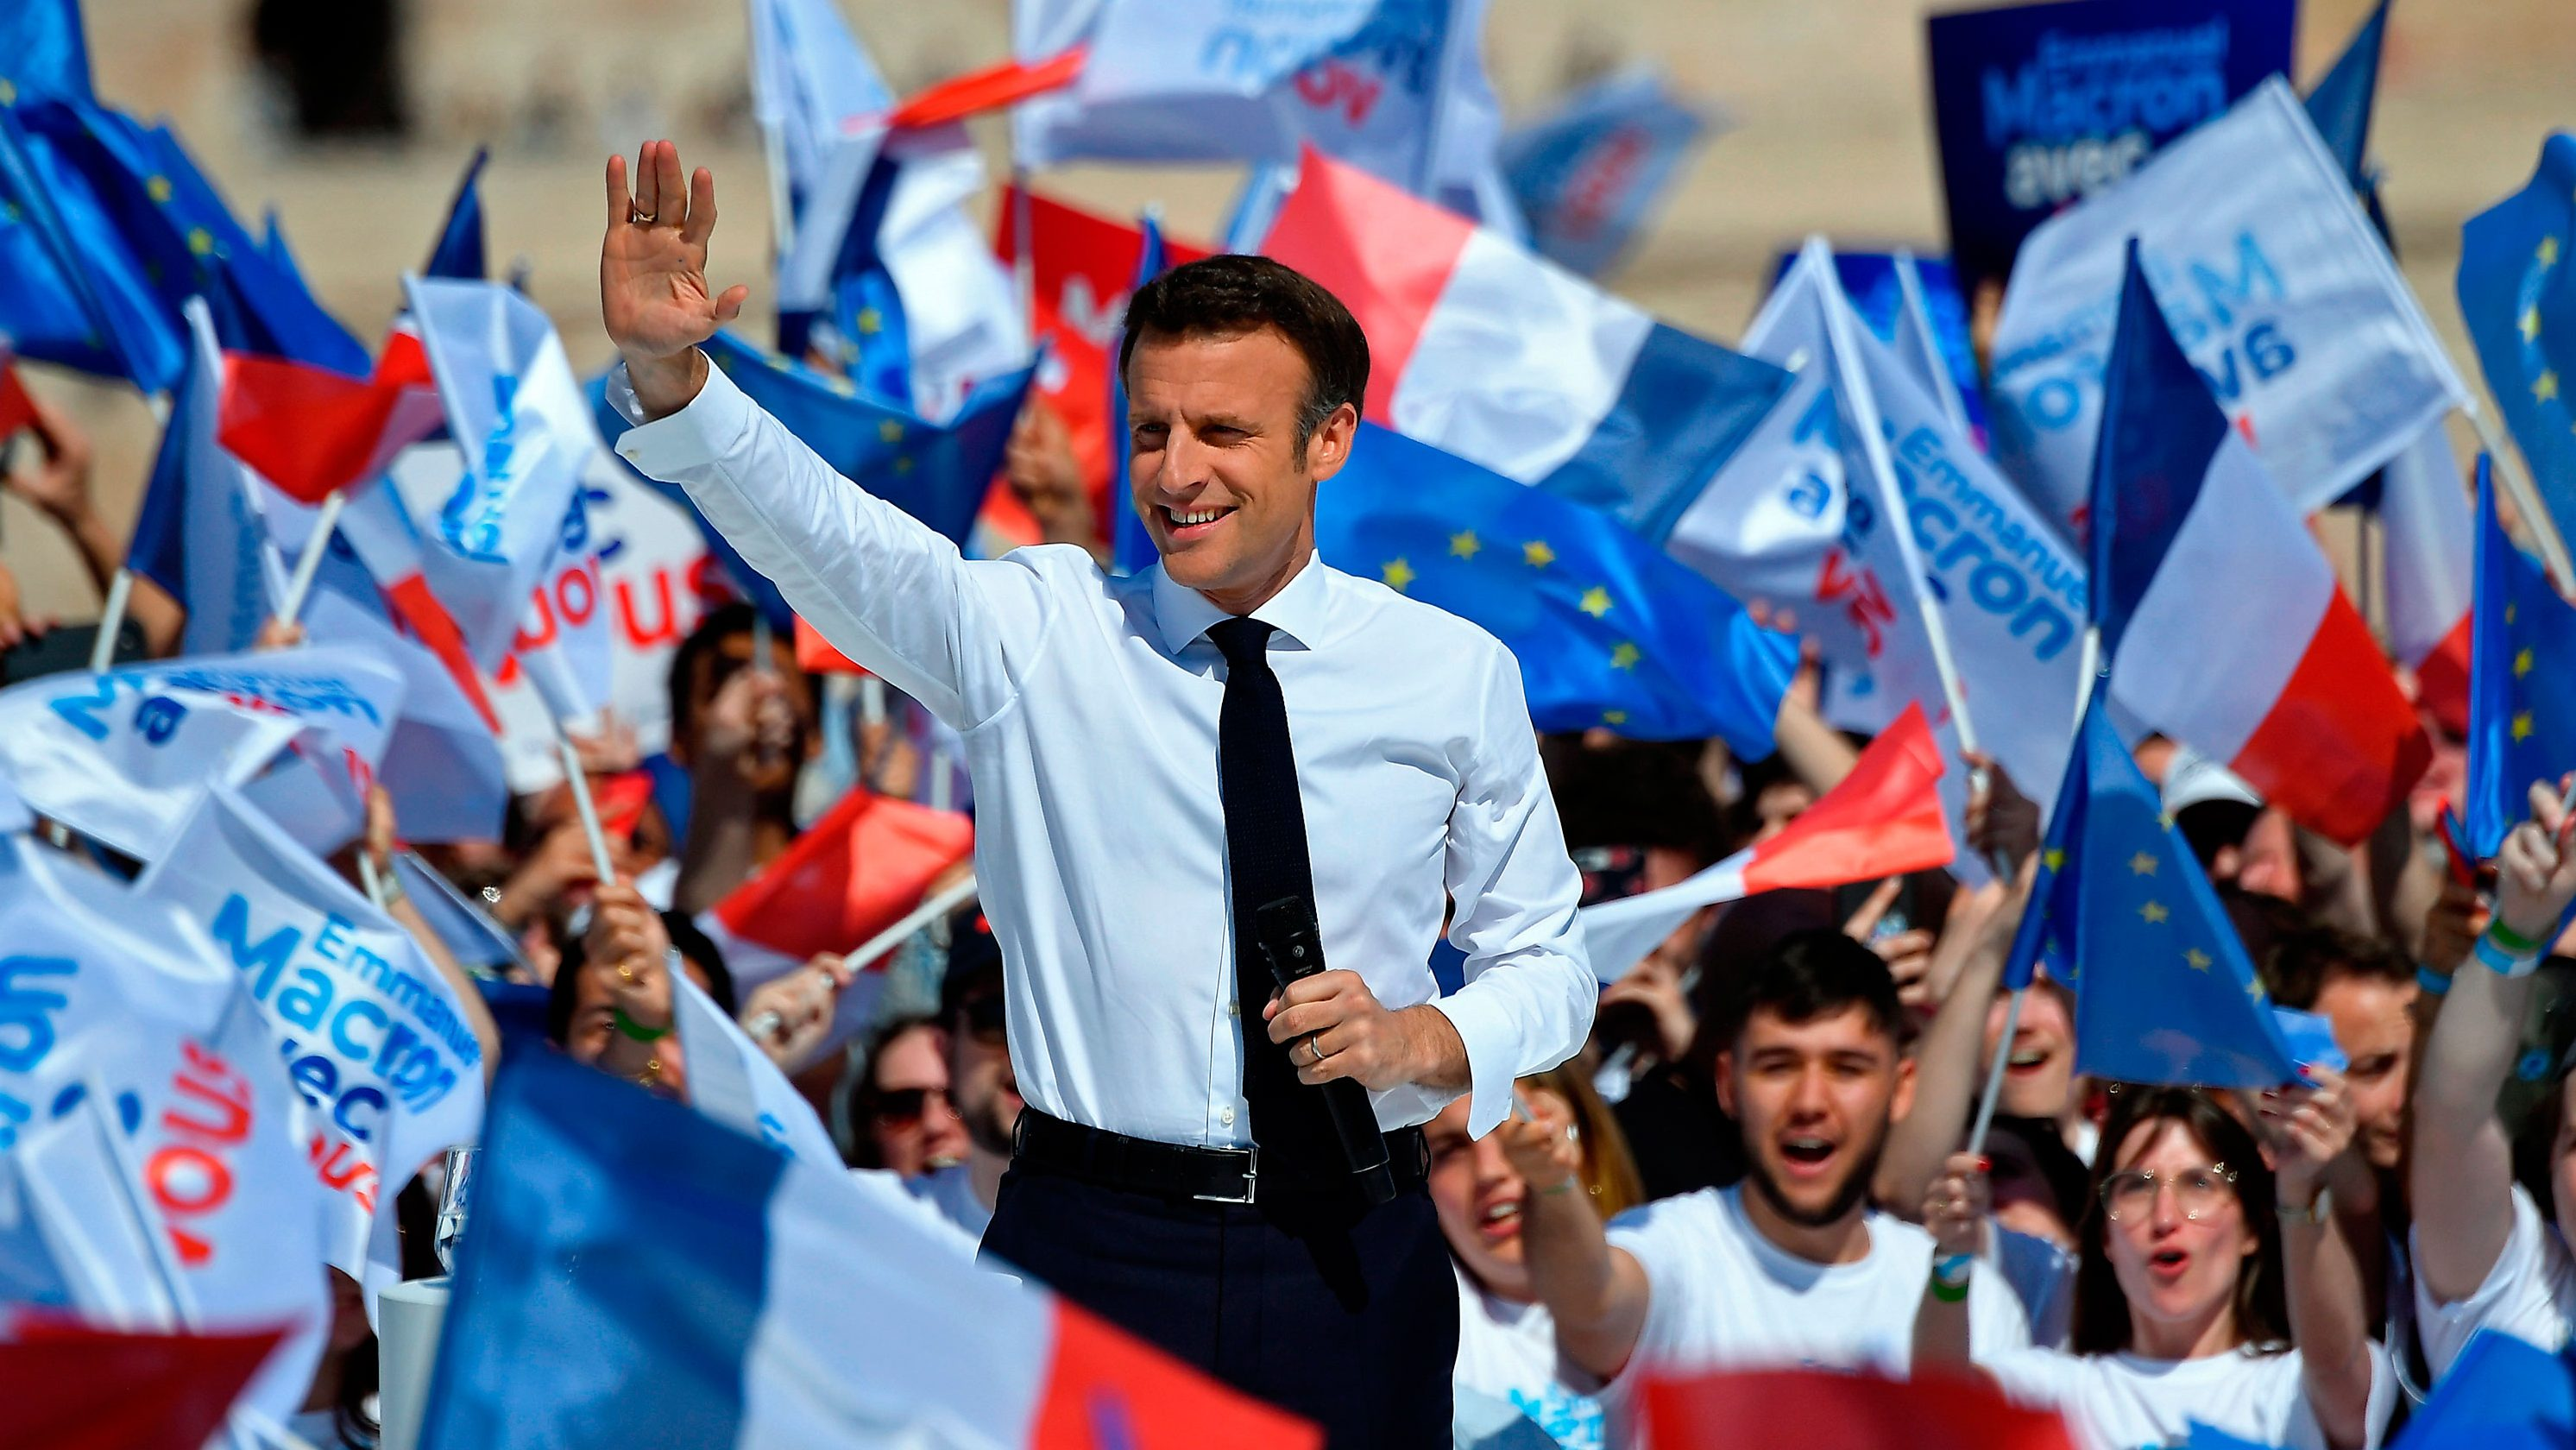 Con el 58,55% de los votos Emmanuel Macron se convierte en el presidente de Francia reelegido en 20 años